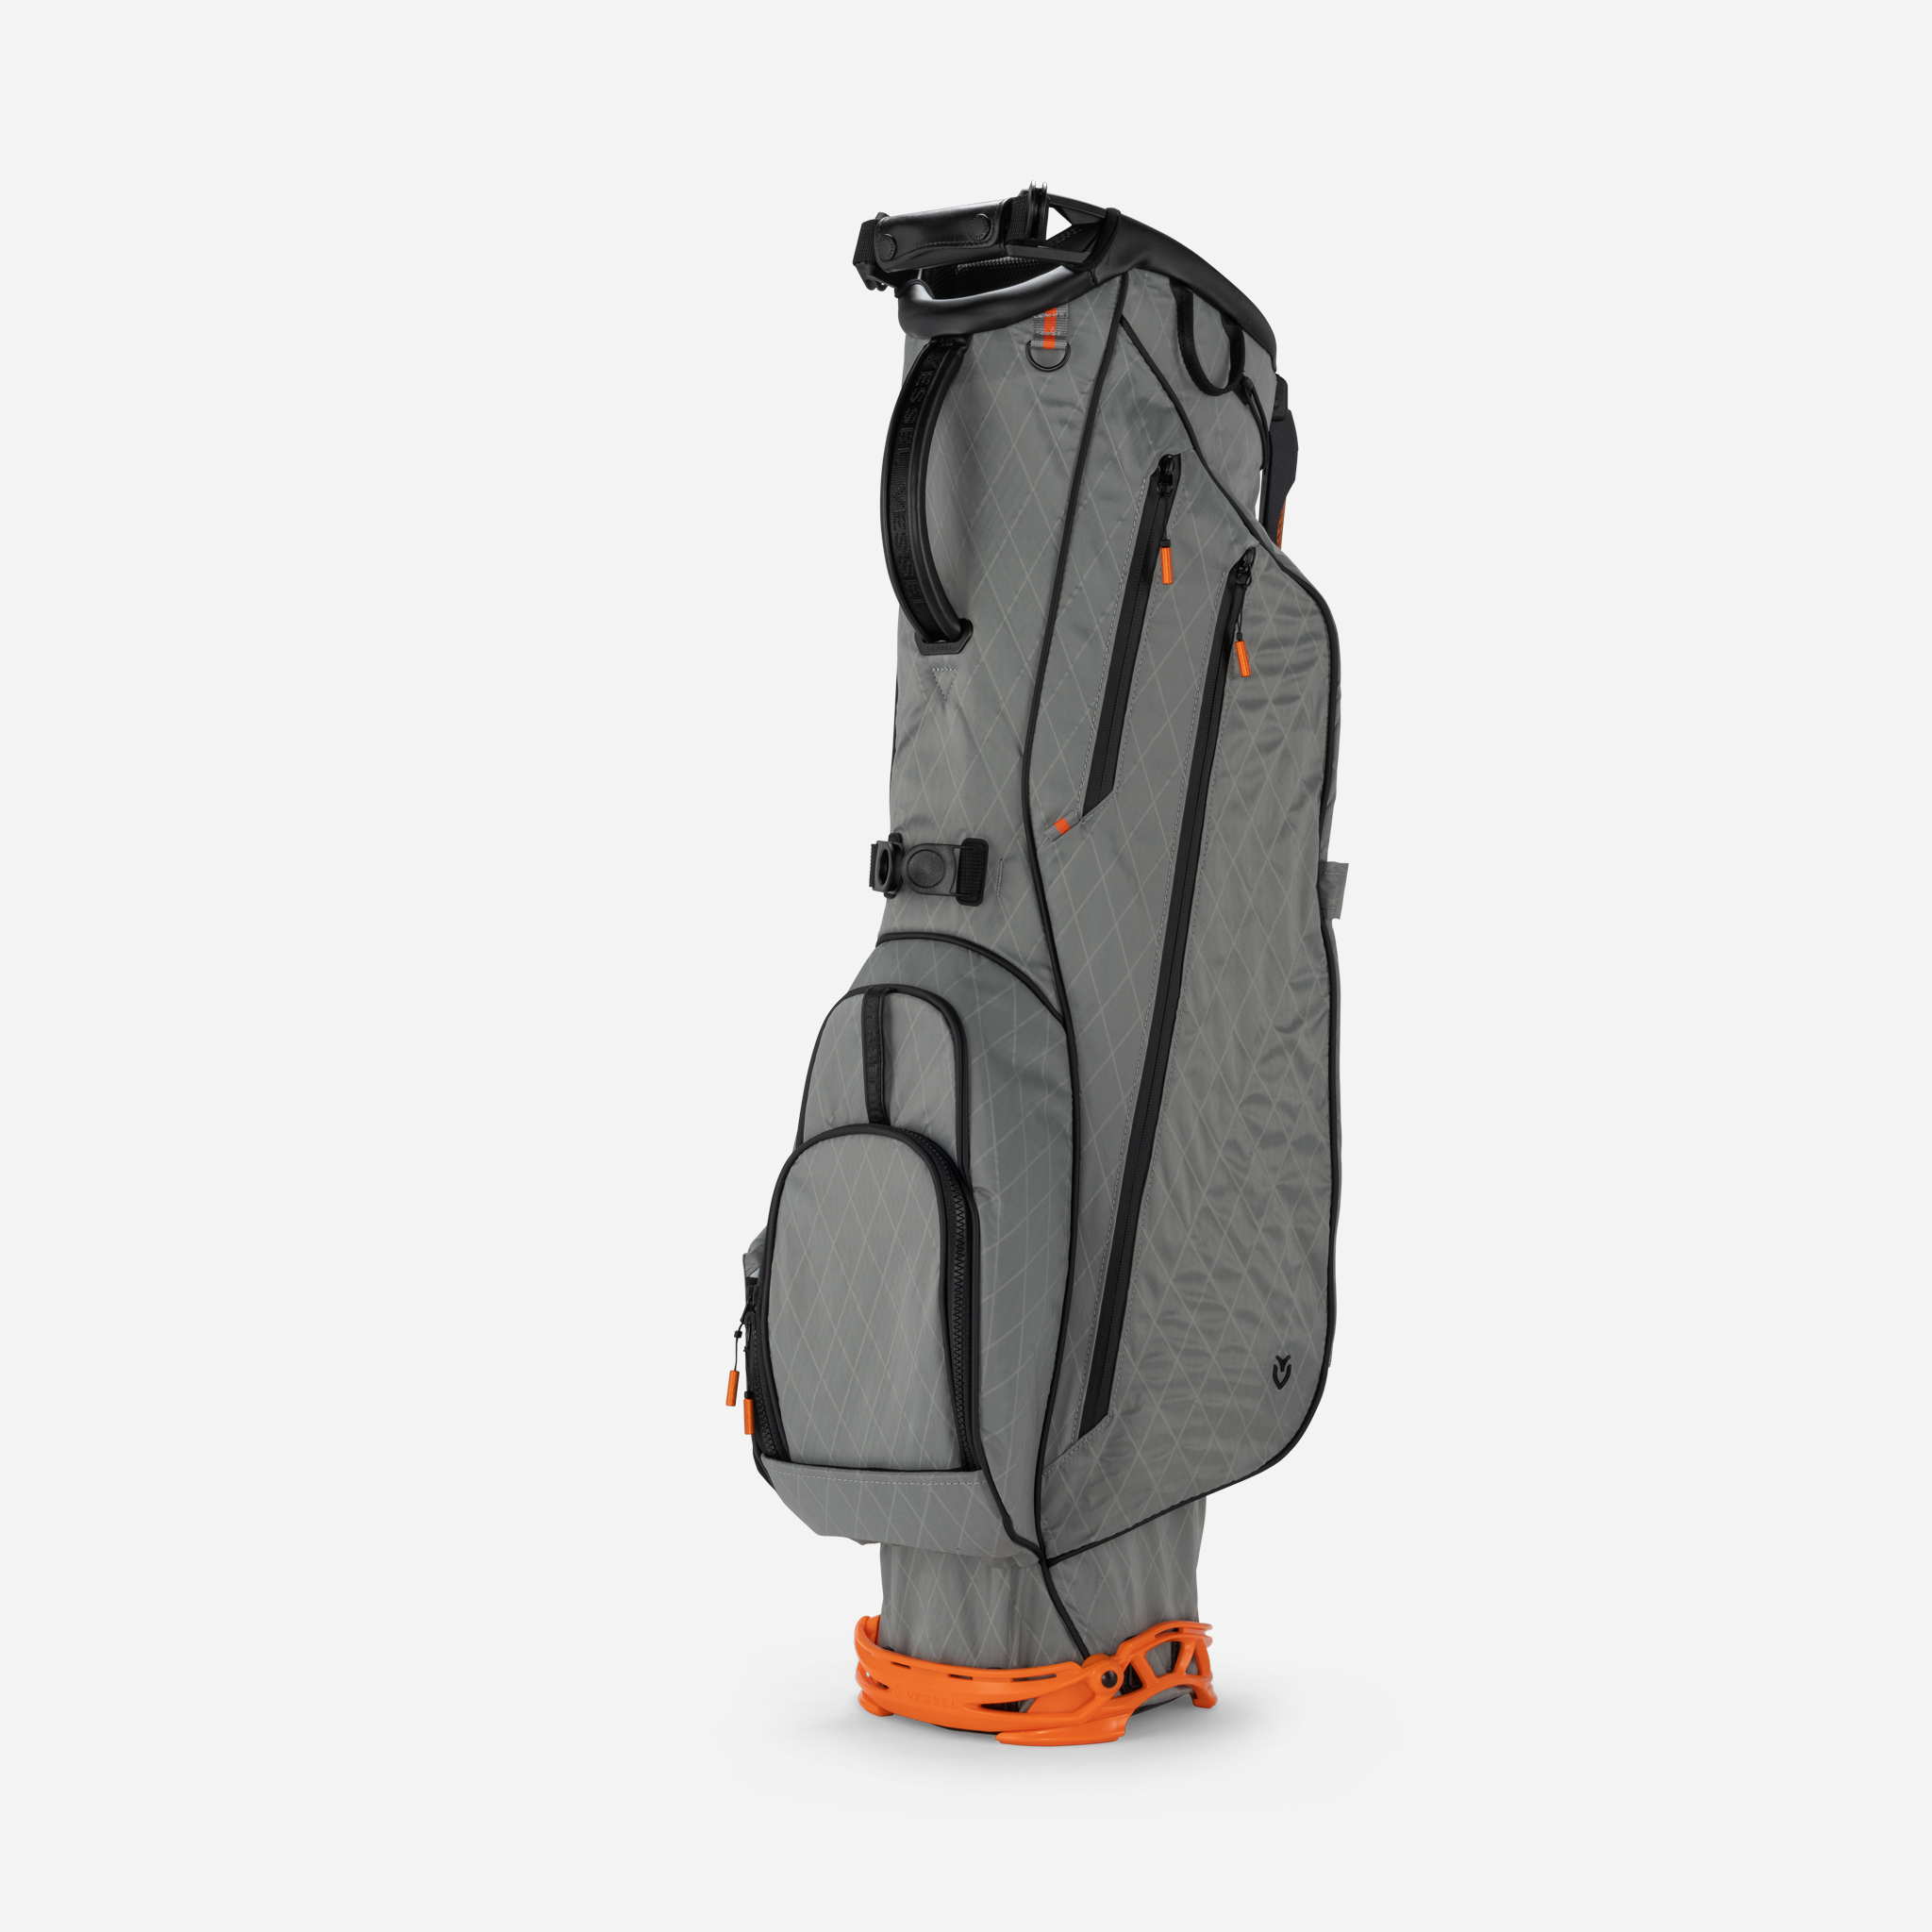 VLS Stand Bag | Lightweight Stand Bag | VESSEL Golf